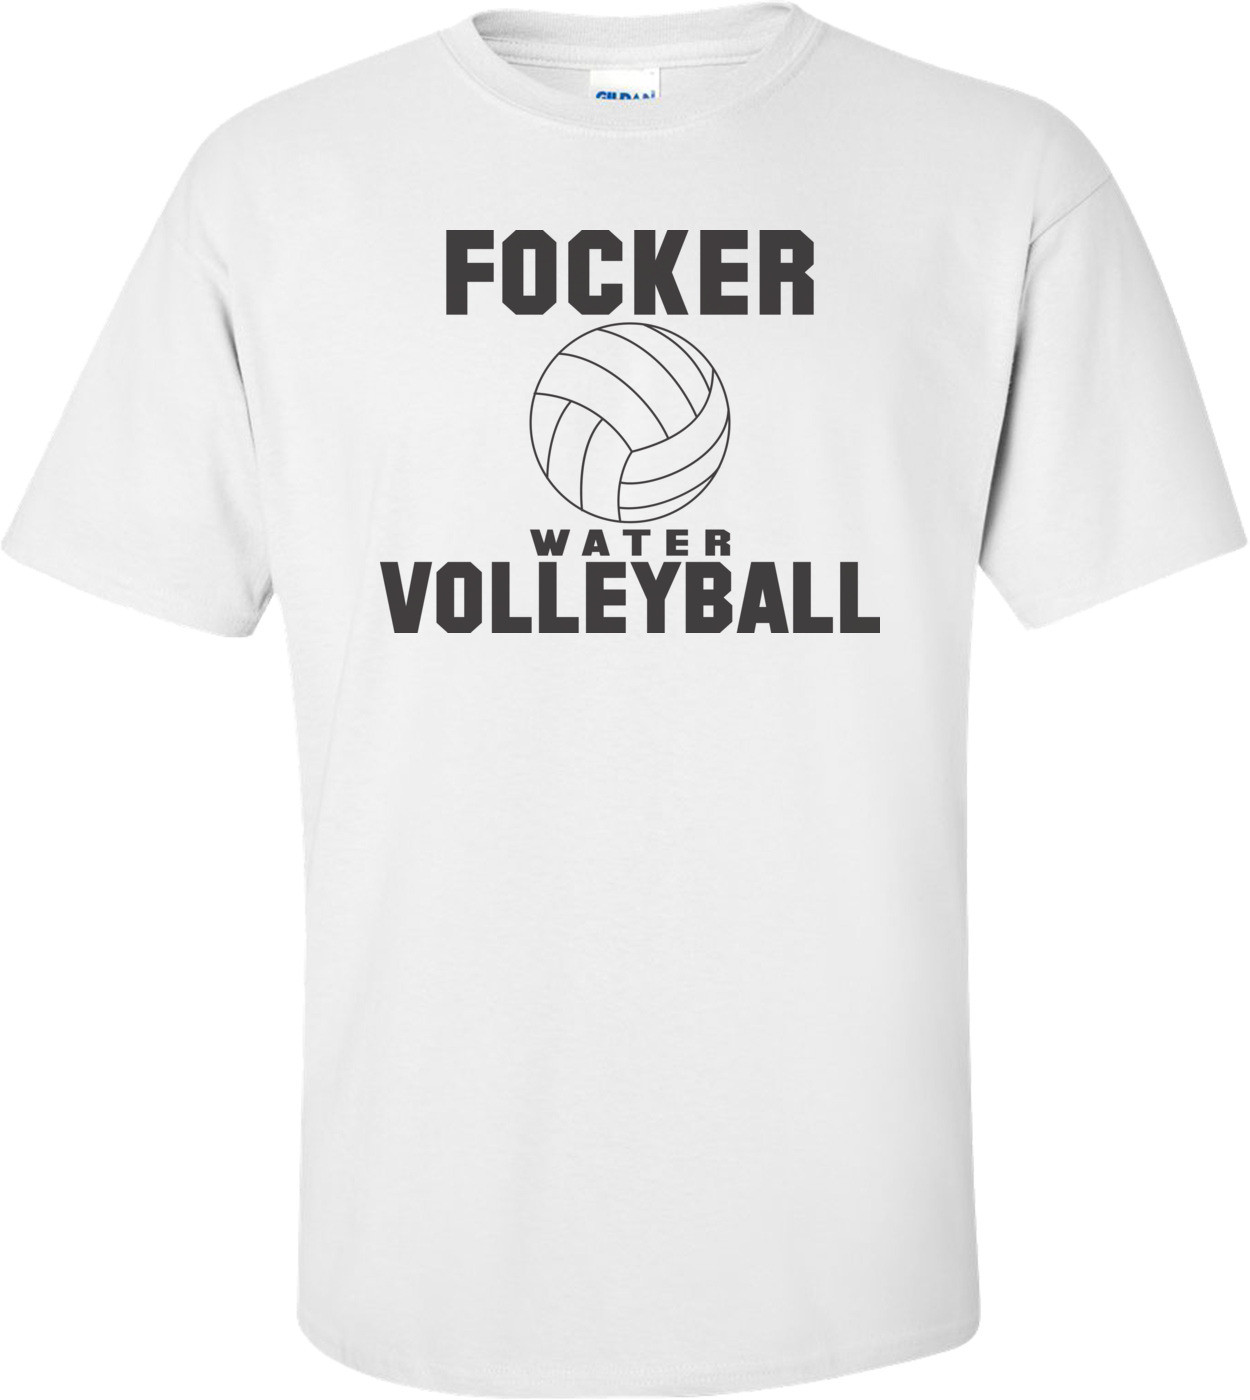 Focker Water Volleyball - Meet The Fockers T-shirt